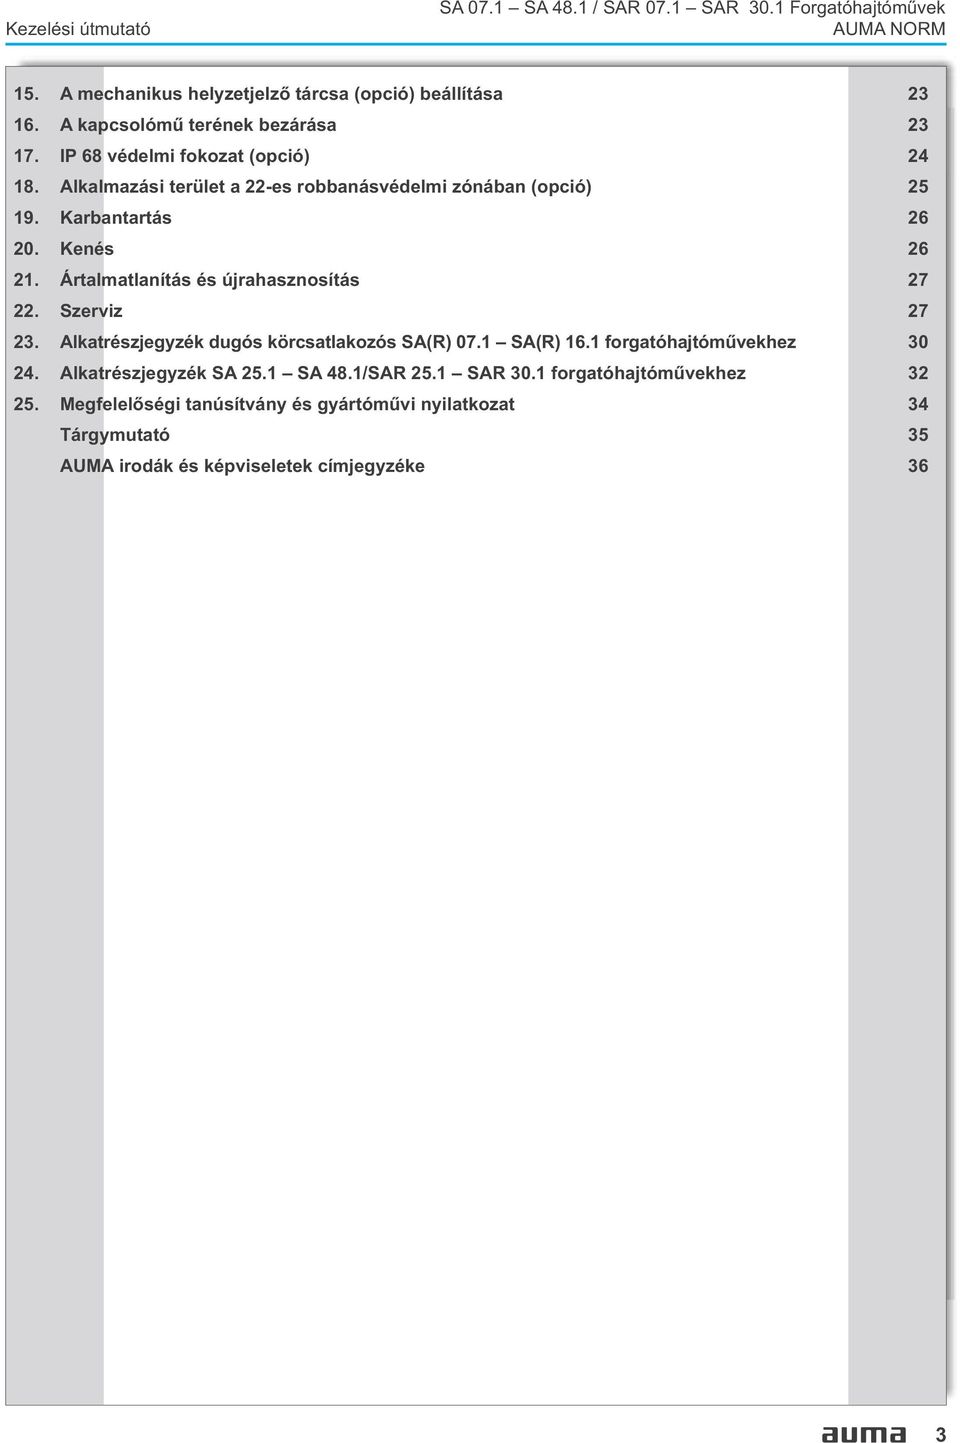 Villamos forgatóhajtómûvek - PDF Ingyenes letöltés